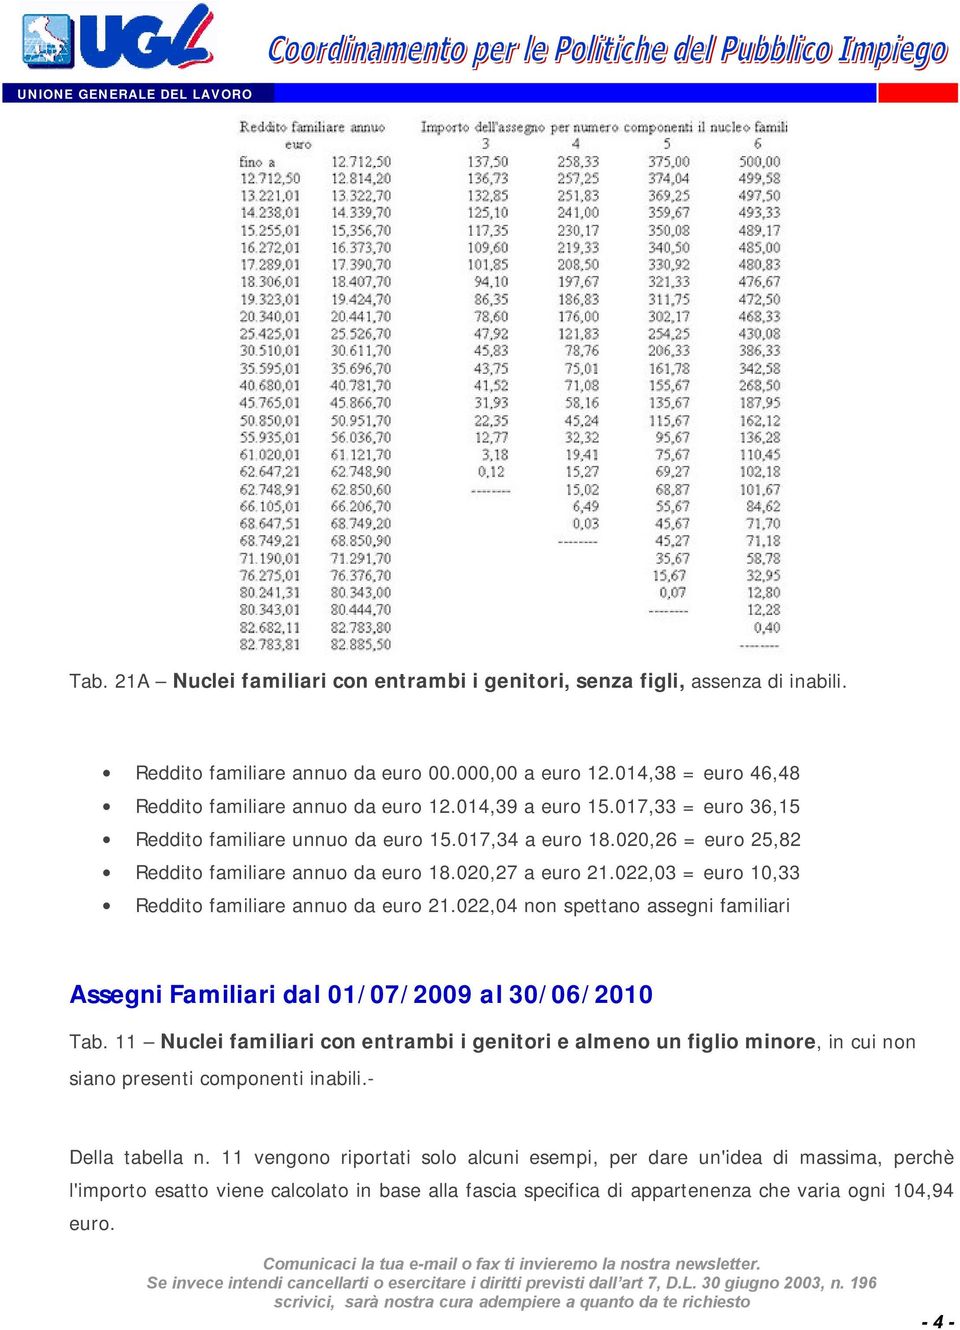 022,03 = euro 10,33 Reddito familiare annuo da euro 21.022,04 non spettano assegni familiari Assegni Familiari dal 01/07/2009 al 30/06/2010 Tab.